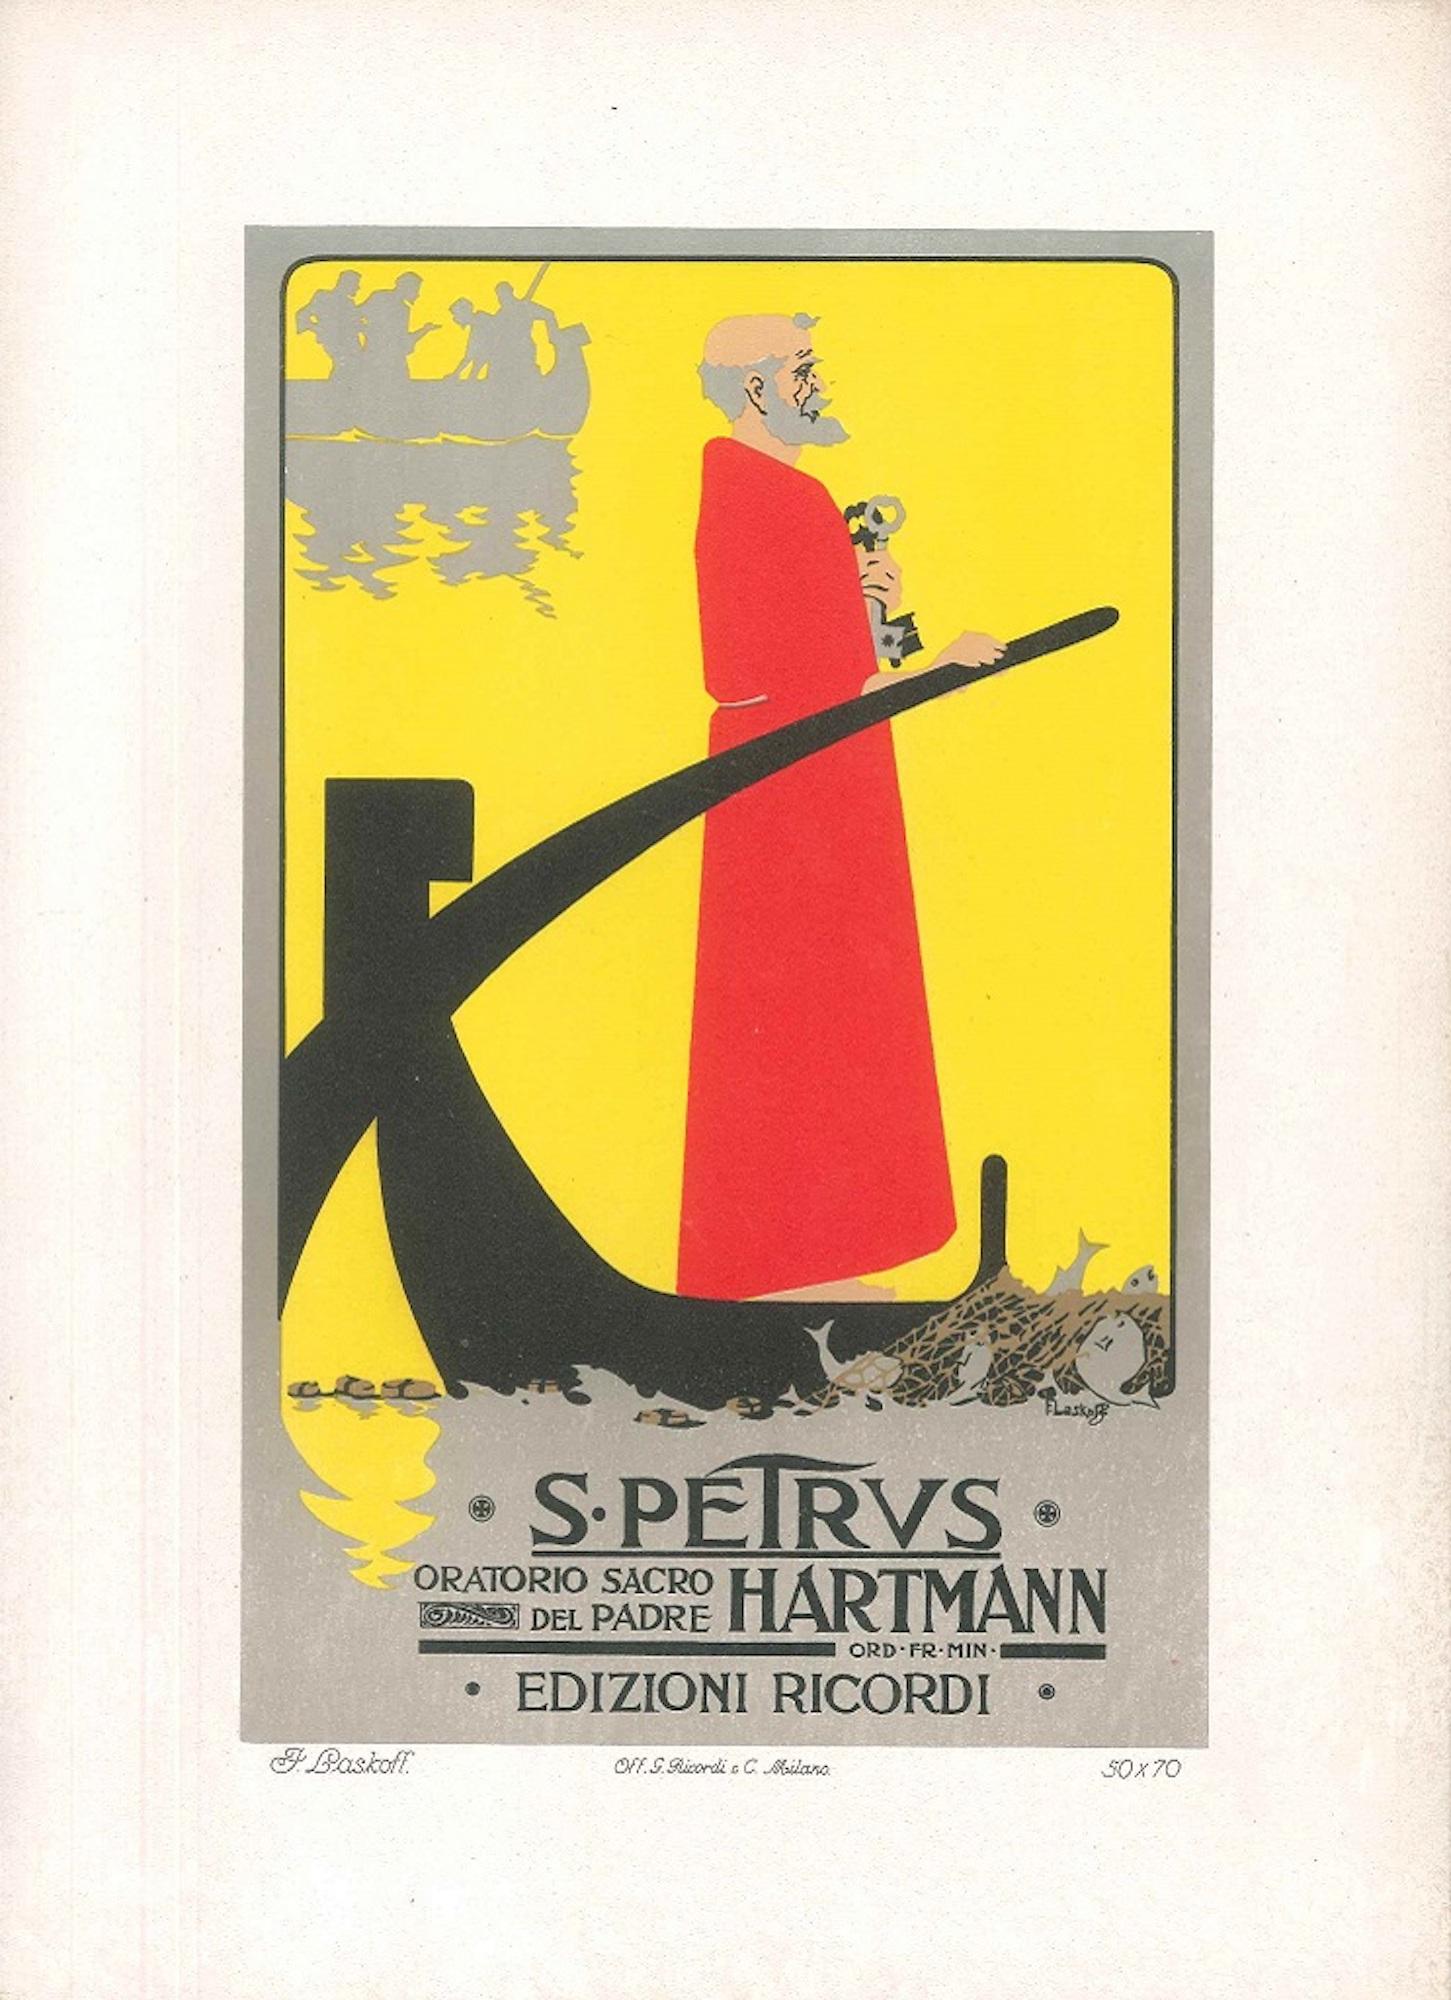 S. Petrus - Vintage Advertising Lithograph by A. Terzi - 1900 ca. - Print by Aleardo Terzi